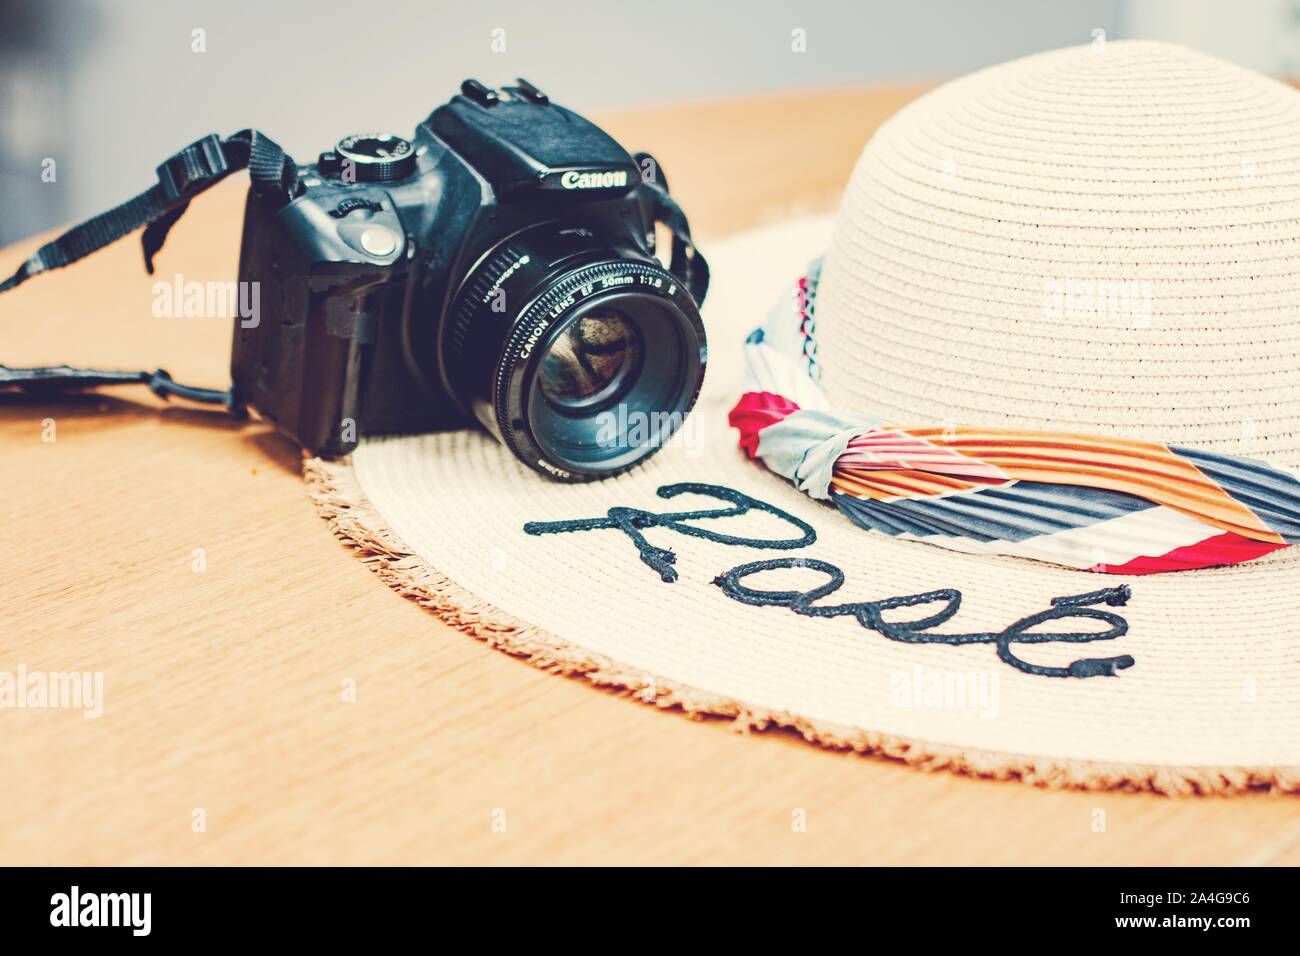 Blog féminin concept, mesdames robe, robe d'été, chapeau de paille, travel concept, plans, vacances, congés, blush, terre cuite, rose tous les jours, mesdames voyage Banque D'Images